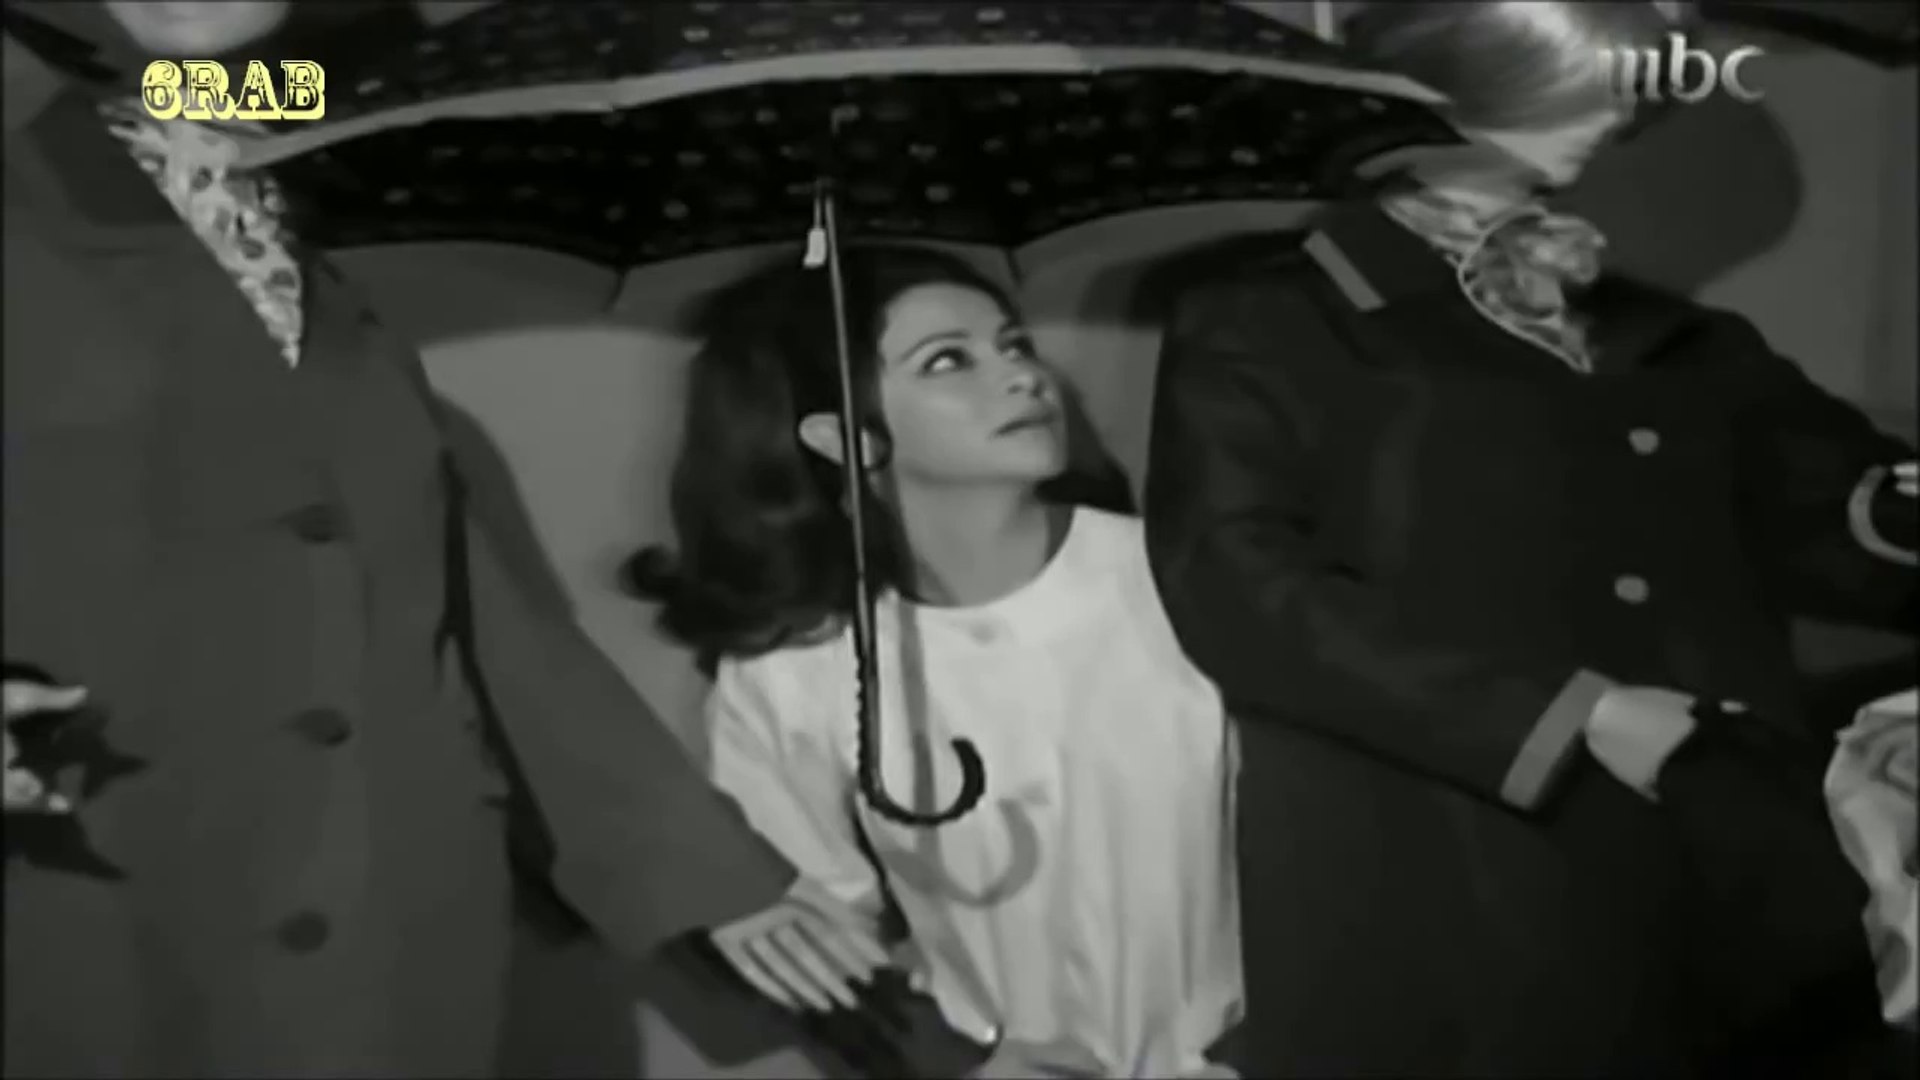 فريد الاطرش - على بالي - من فيلم الحب الكبير عام 1968م - video Dailymotion